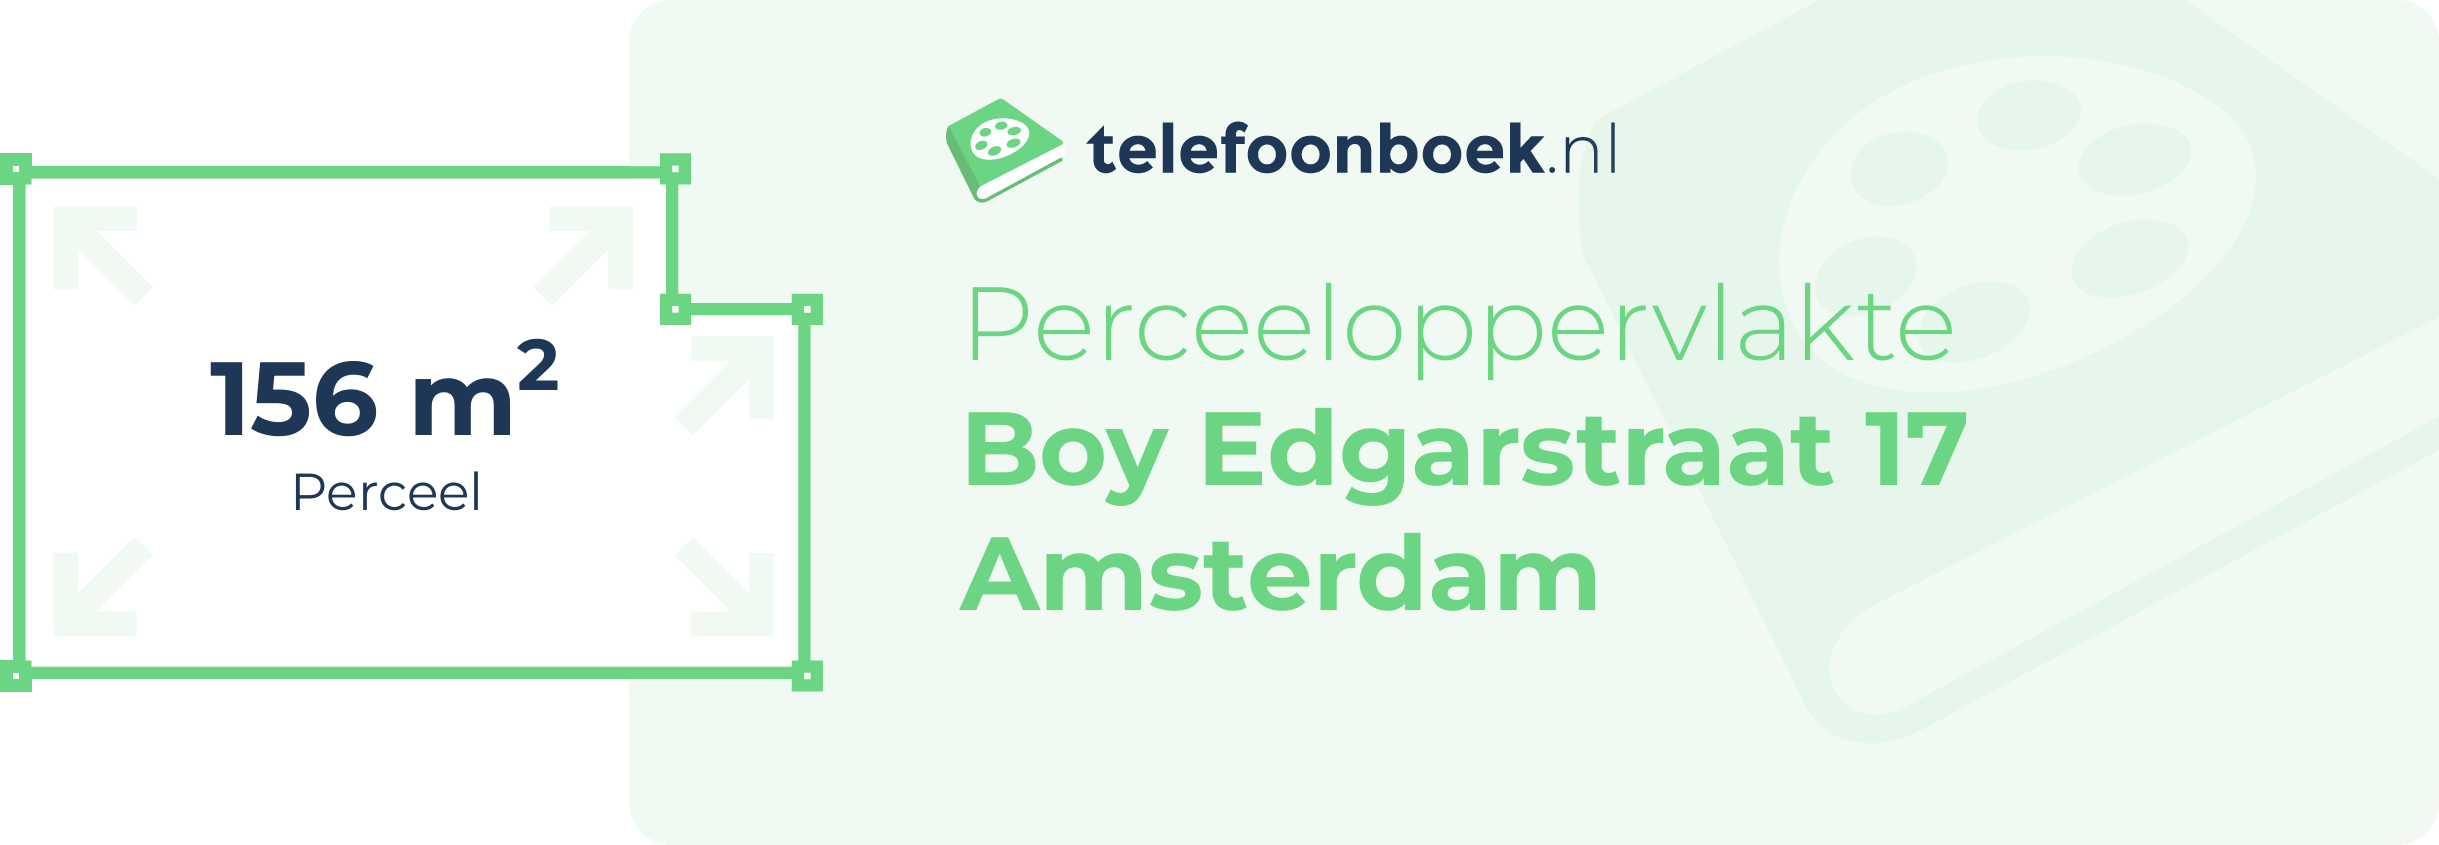 Perceeloppervlakte Boy Edgarstraat 17 Amsterdam